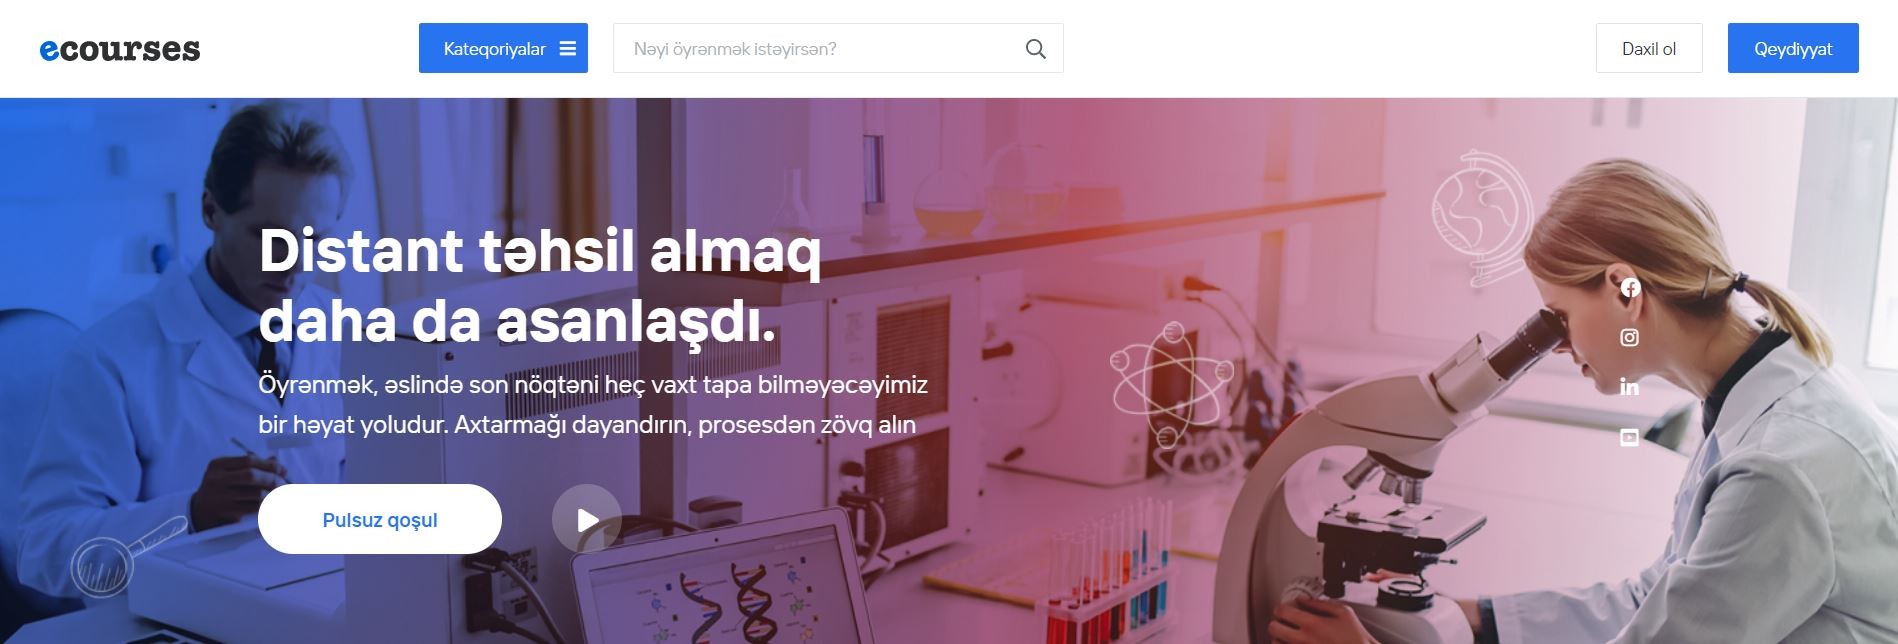 По инициативе Министерства здравоохранения Азербайджанской Республики создана и запущена онлайн-платформа курсов дистанционного обучения для медицинских работников различных специальностей.